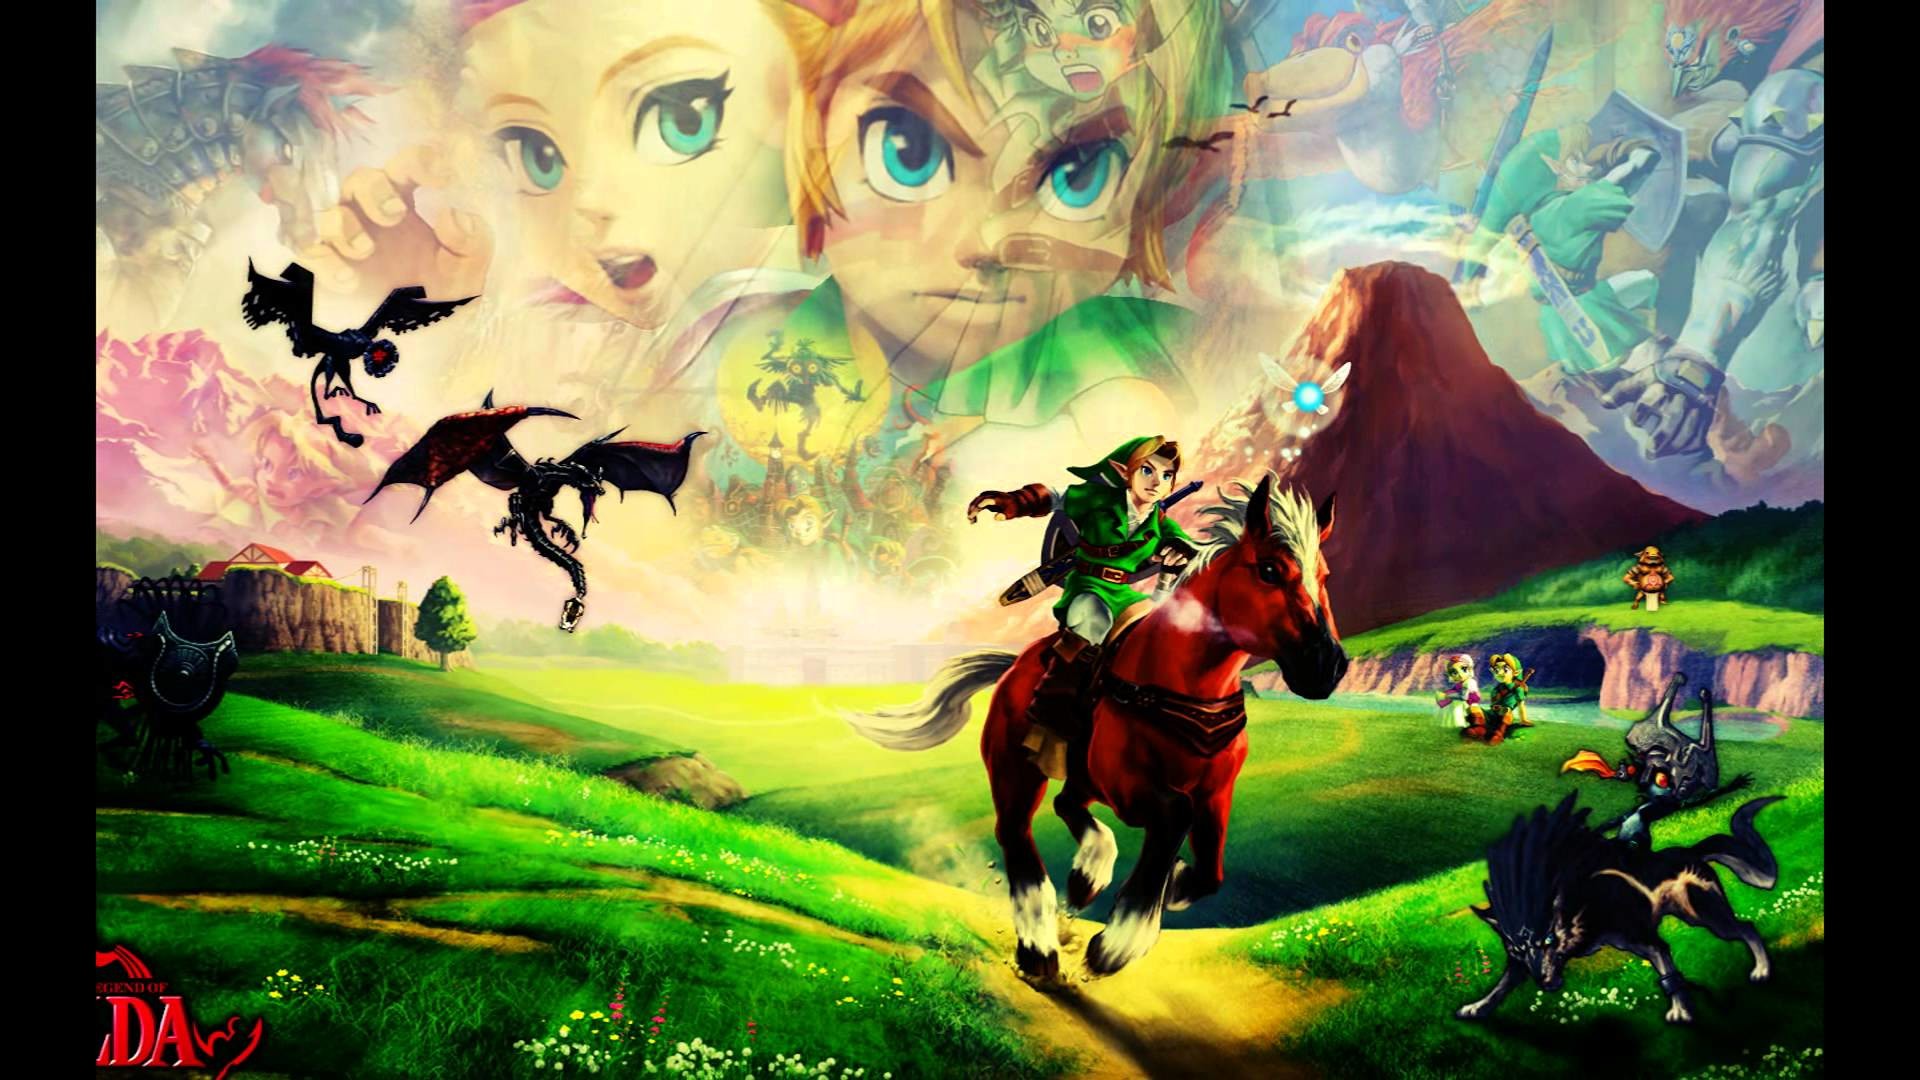 1920x1080 The Legend of Zelda: Skyward Sword|Ballad of The Goddess - 1080P HD